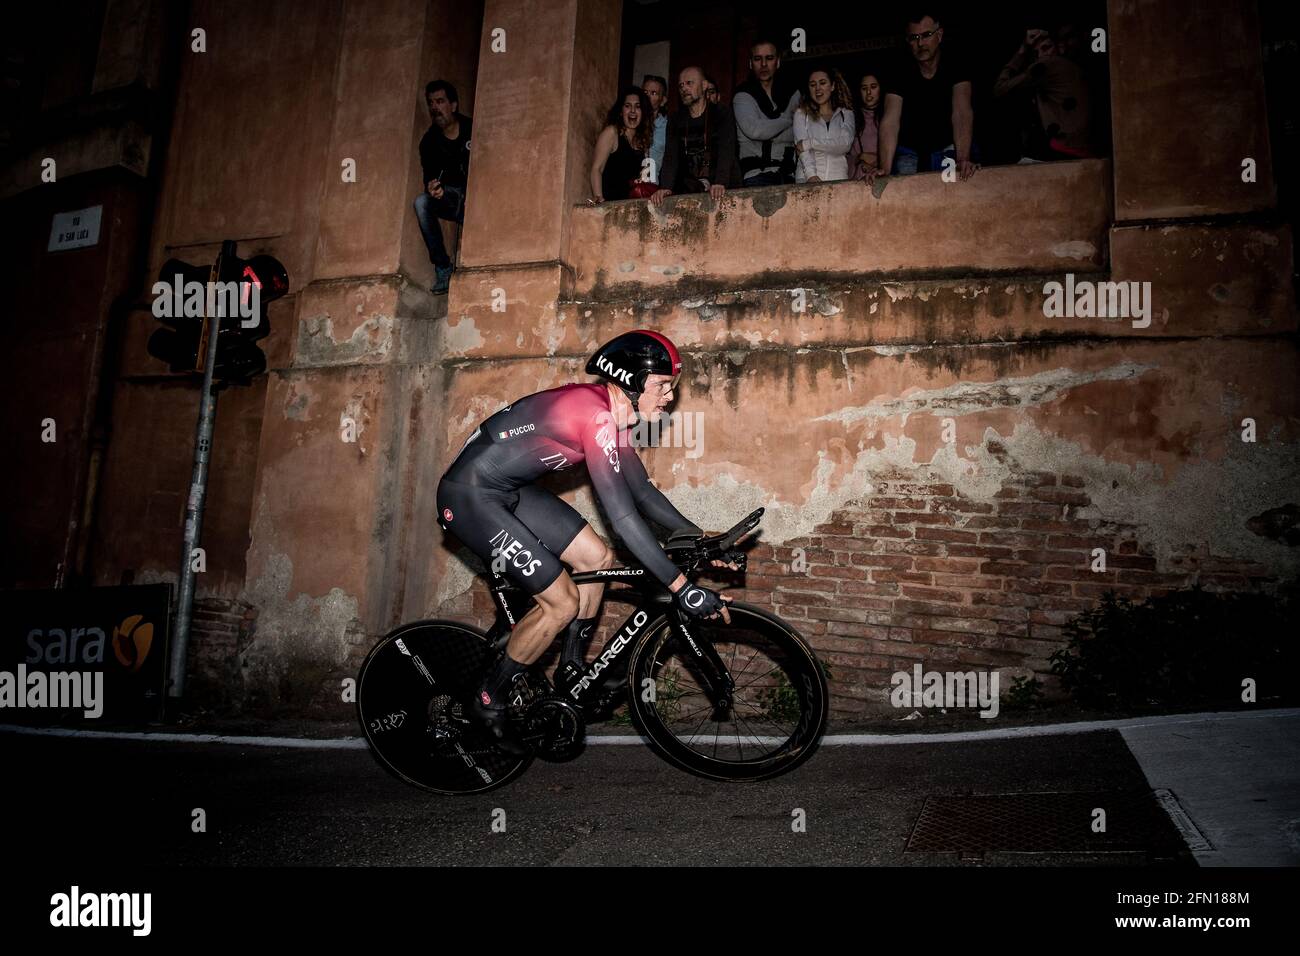 11/05/2019 Giro d'Italia Stage 1. Individual Time Trial. Bologna. Salvatore Puccio. Stock Photo